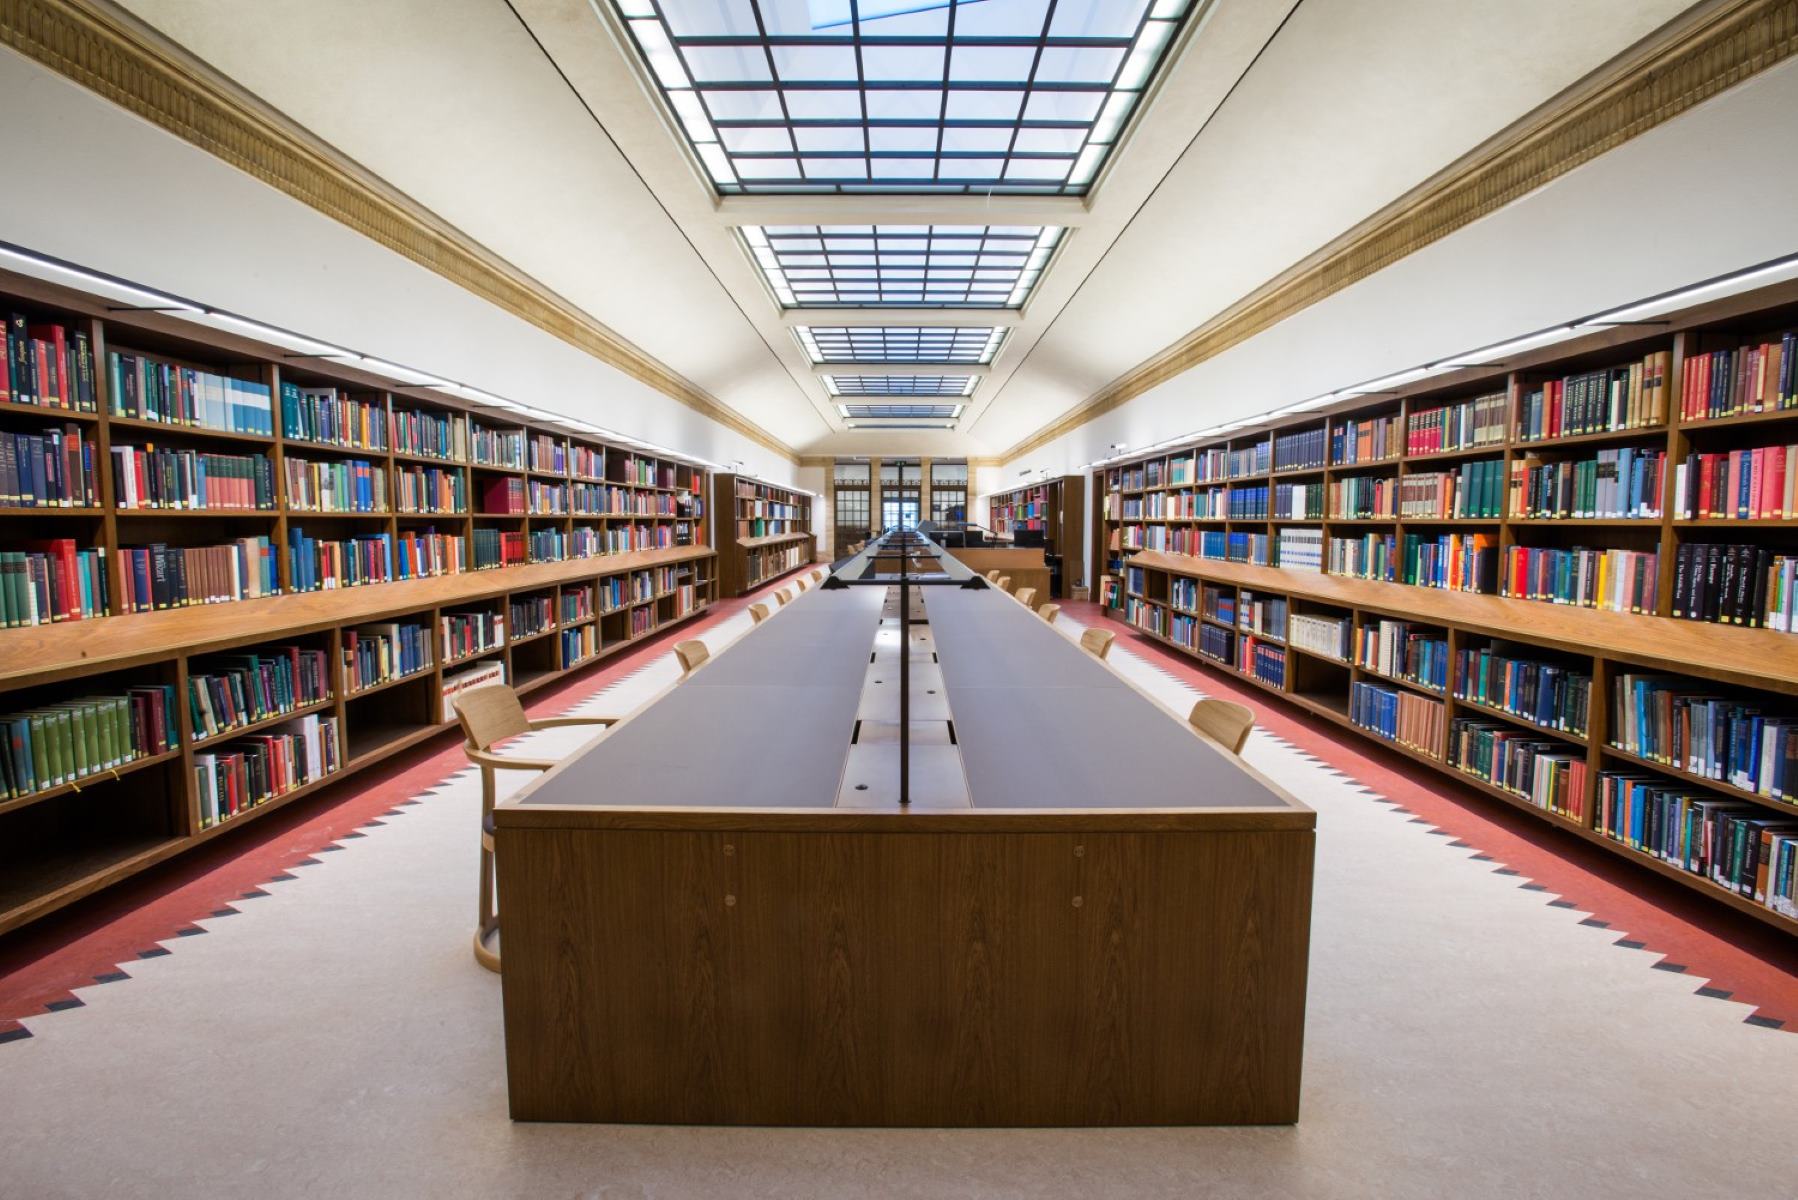 Library release. Оксфордский университет библиотека. Йельский университет библиотека. Красивая библиотека. Красивые читальные залы.